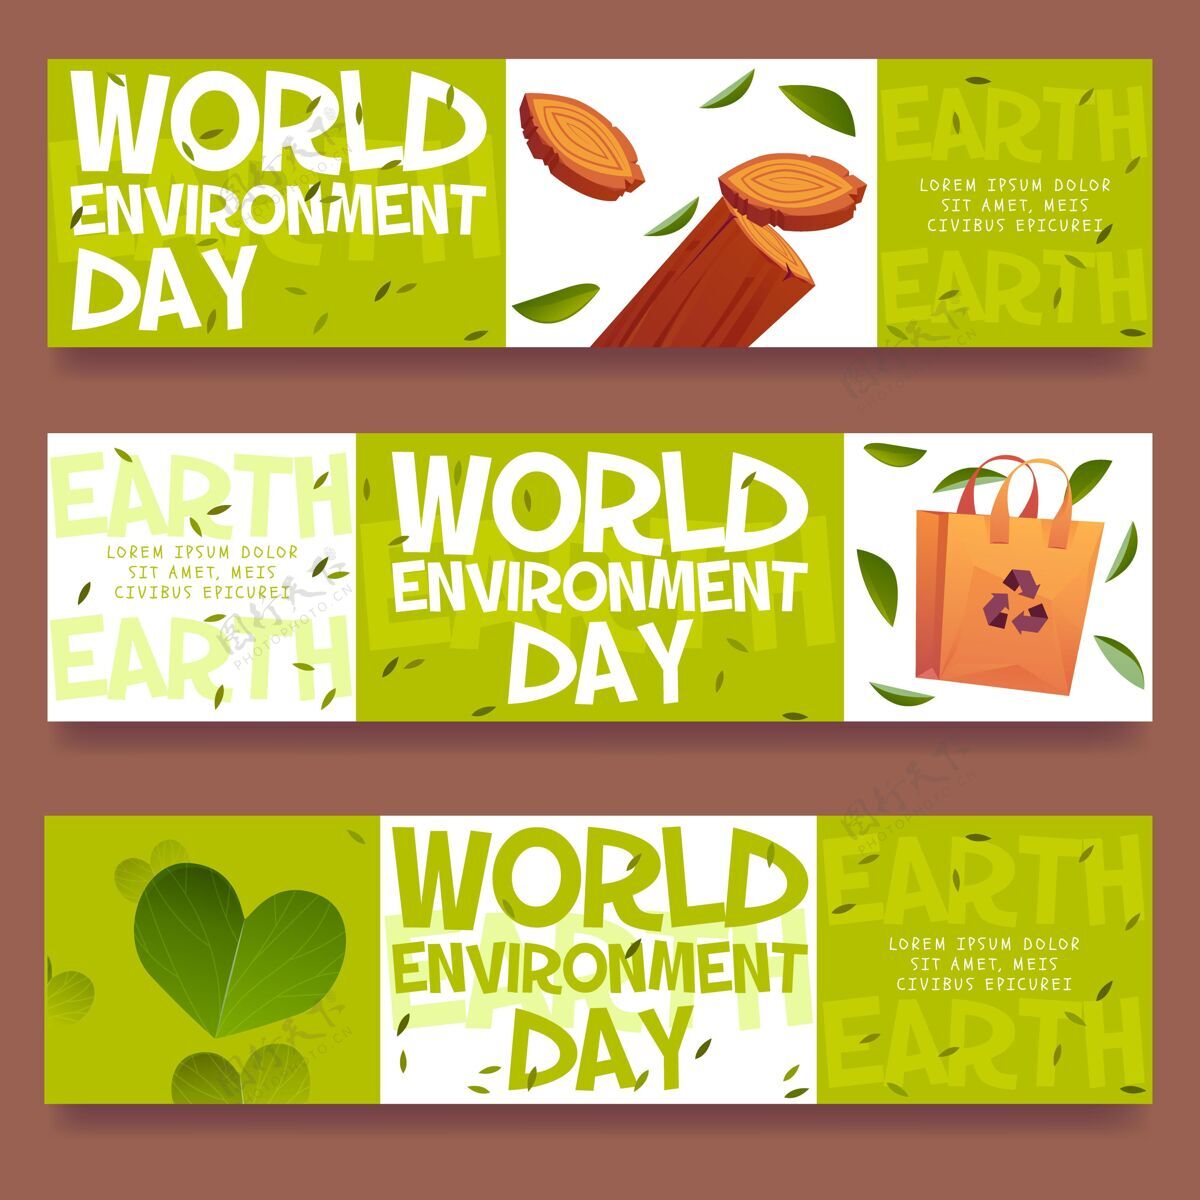 横幅模板卡通世界环境日横幅模板生态国际活动